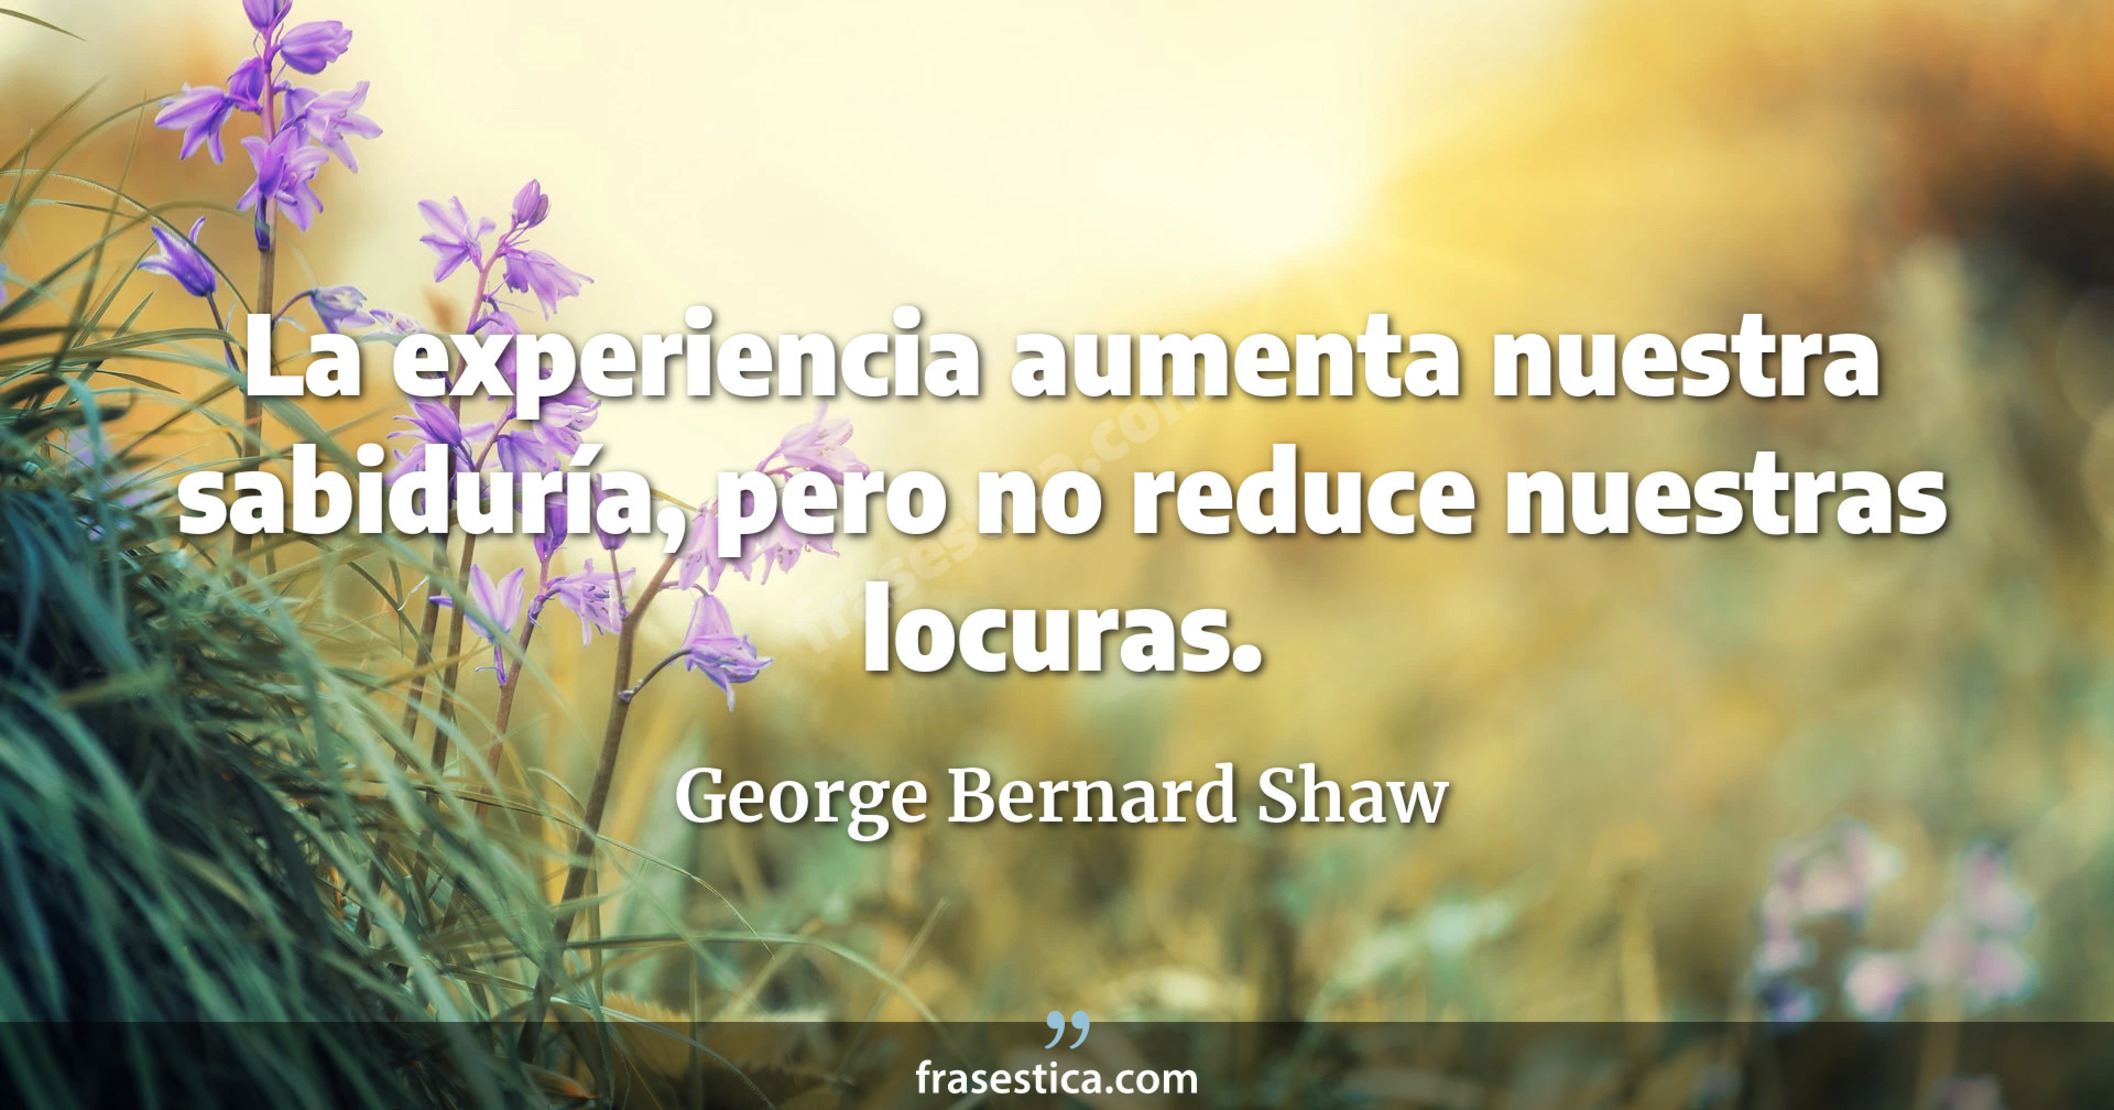 La experiencia aumenta nuestra sabiduría, pero no reduce nuestras locuras. - George Bernard Shaw